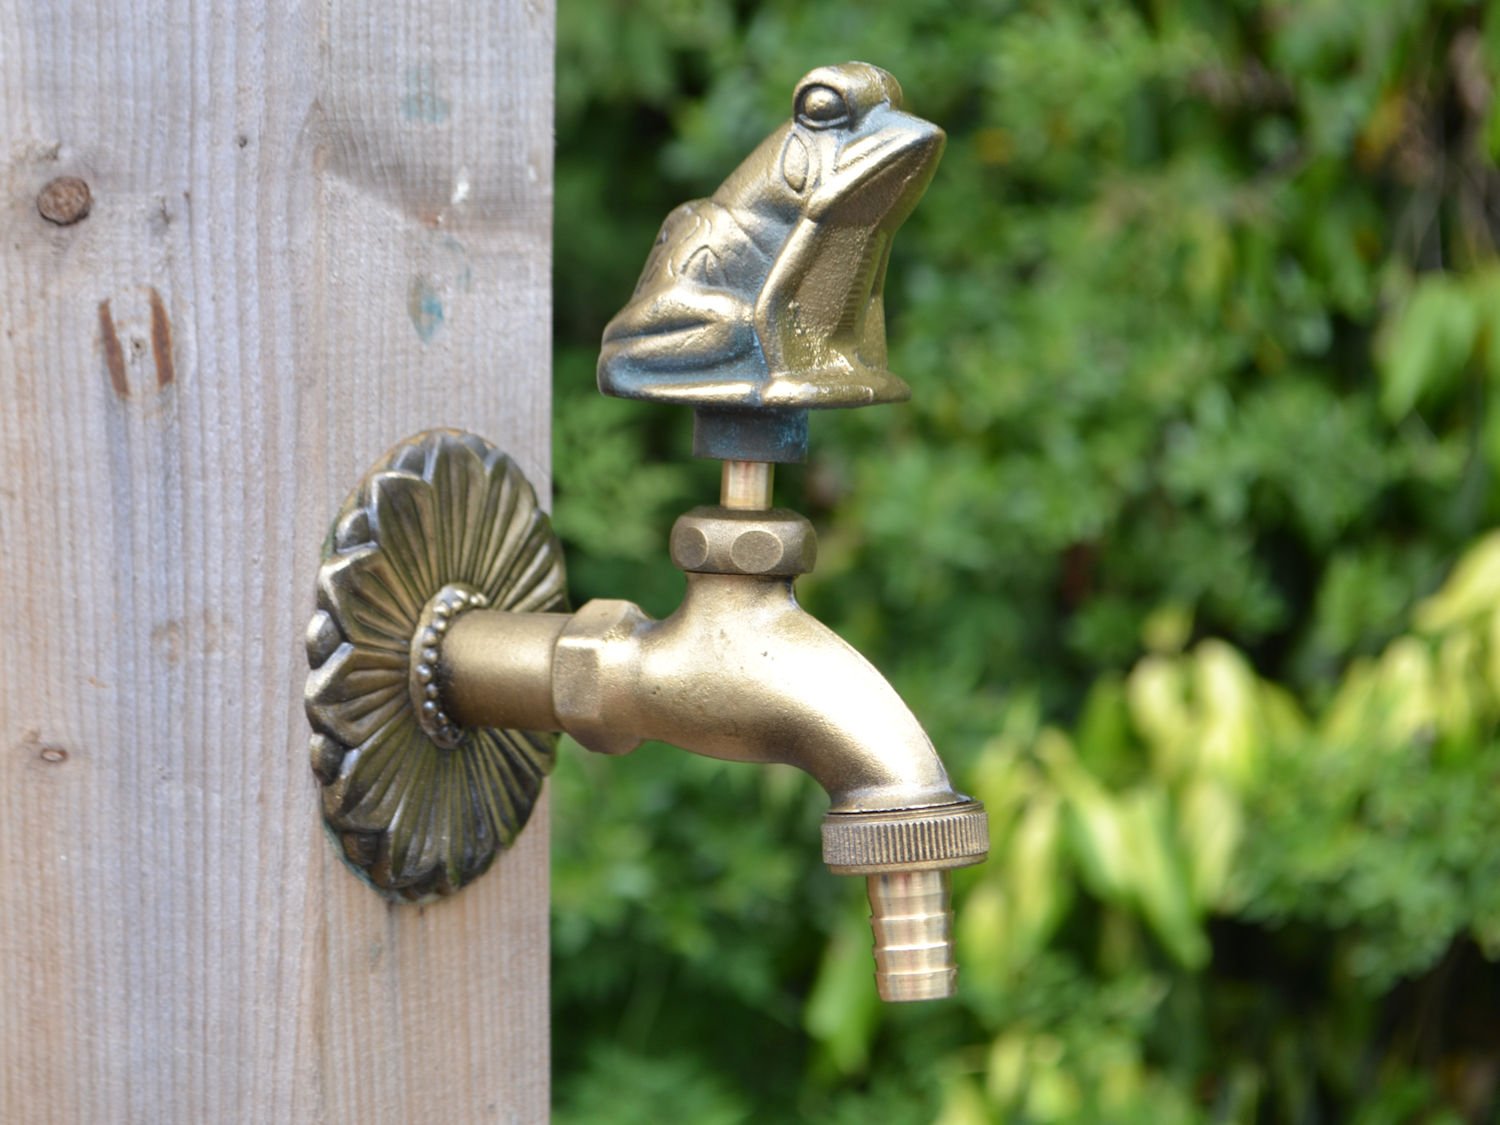 frog ornamental outdoor garden tap